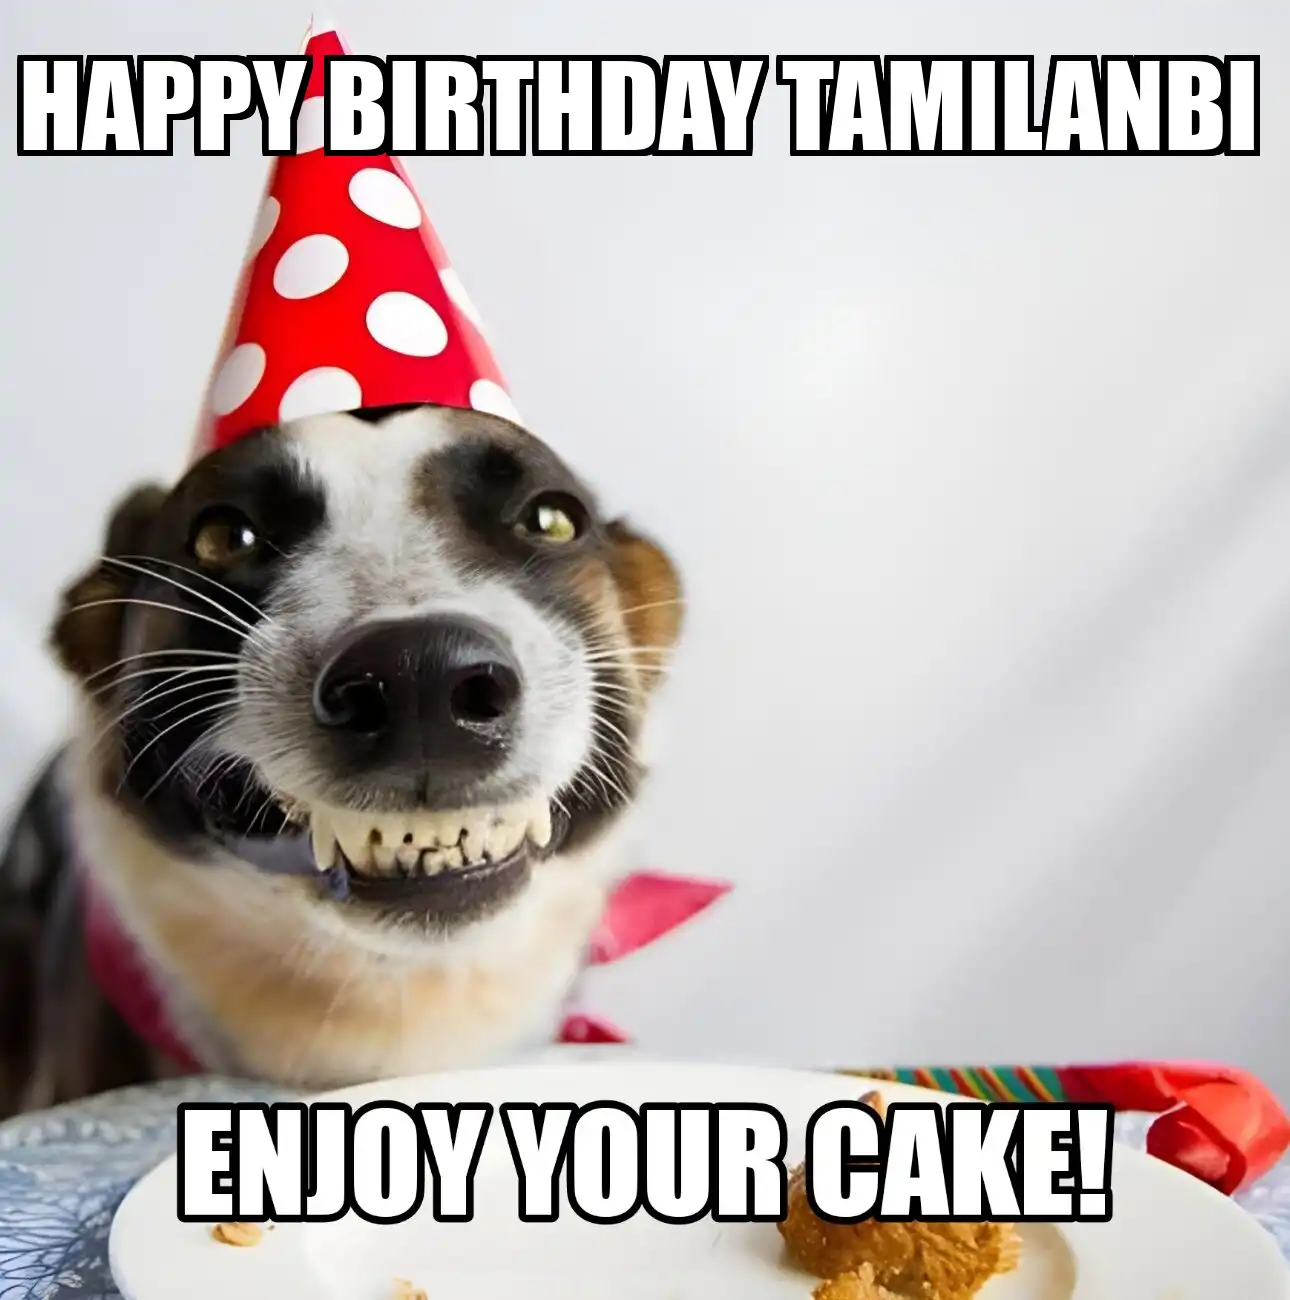 Happy Birthday Tamilanbi Enjoy Your Cake Dog Meme